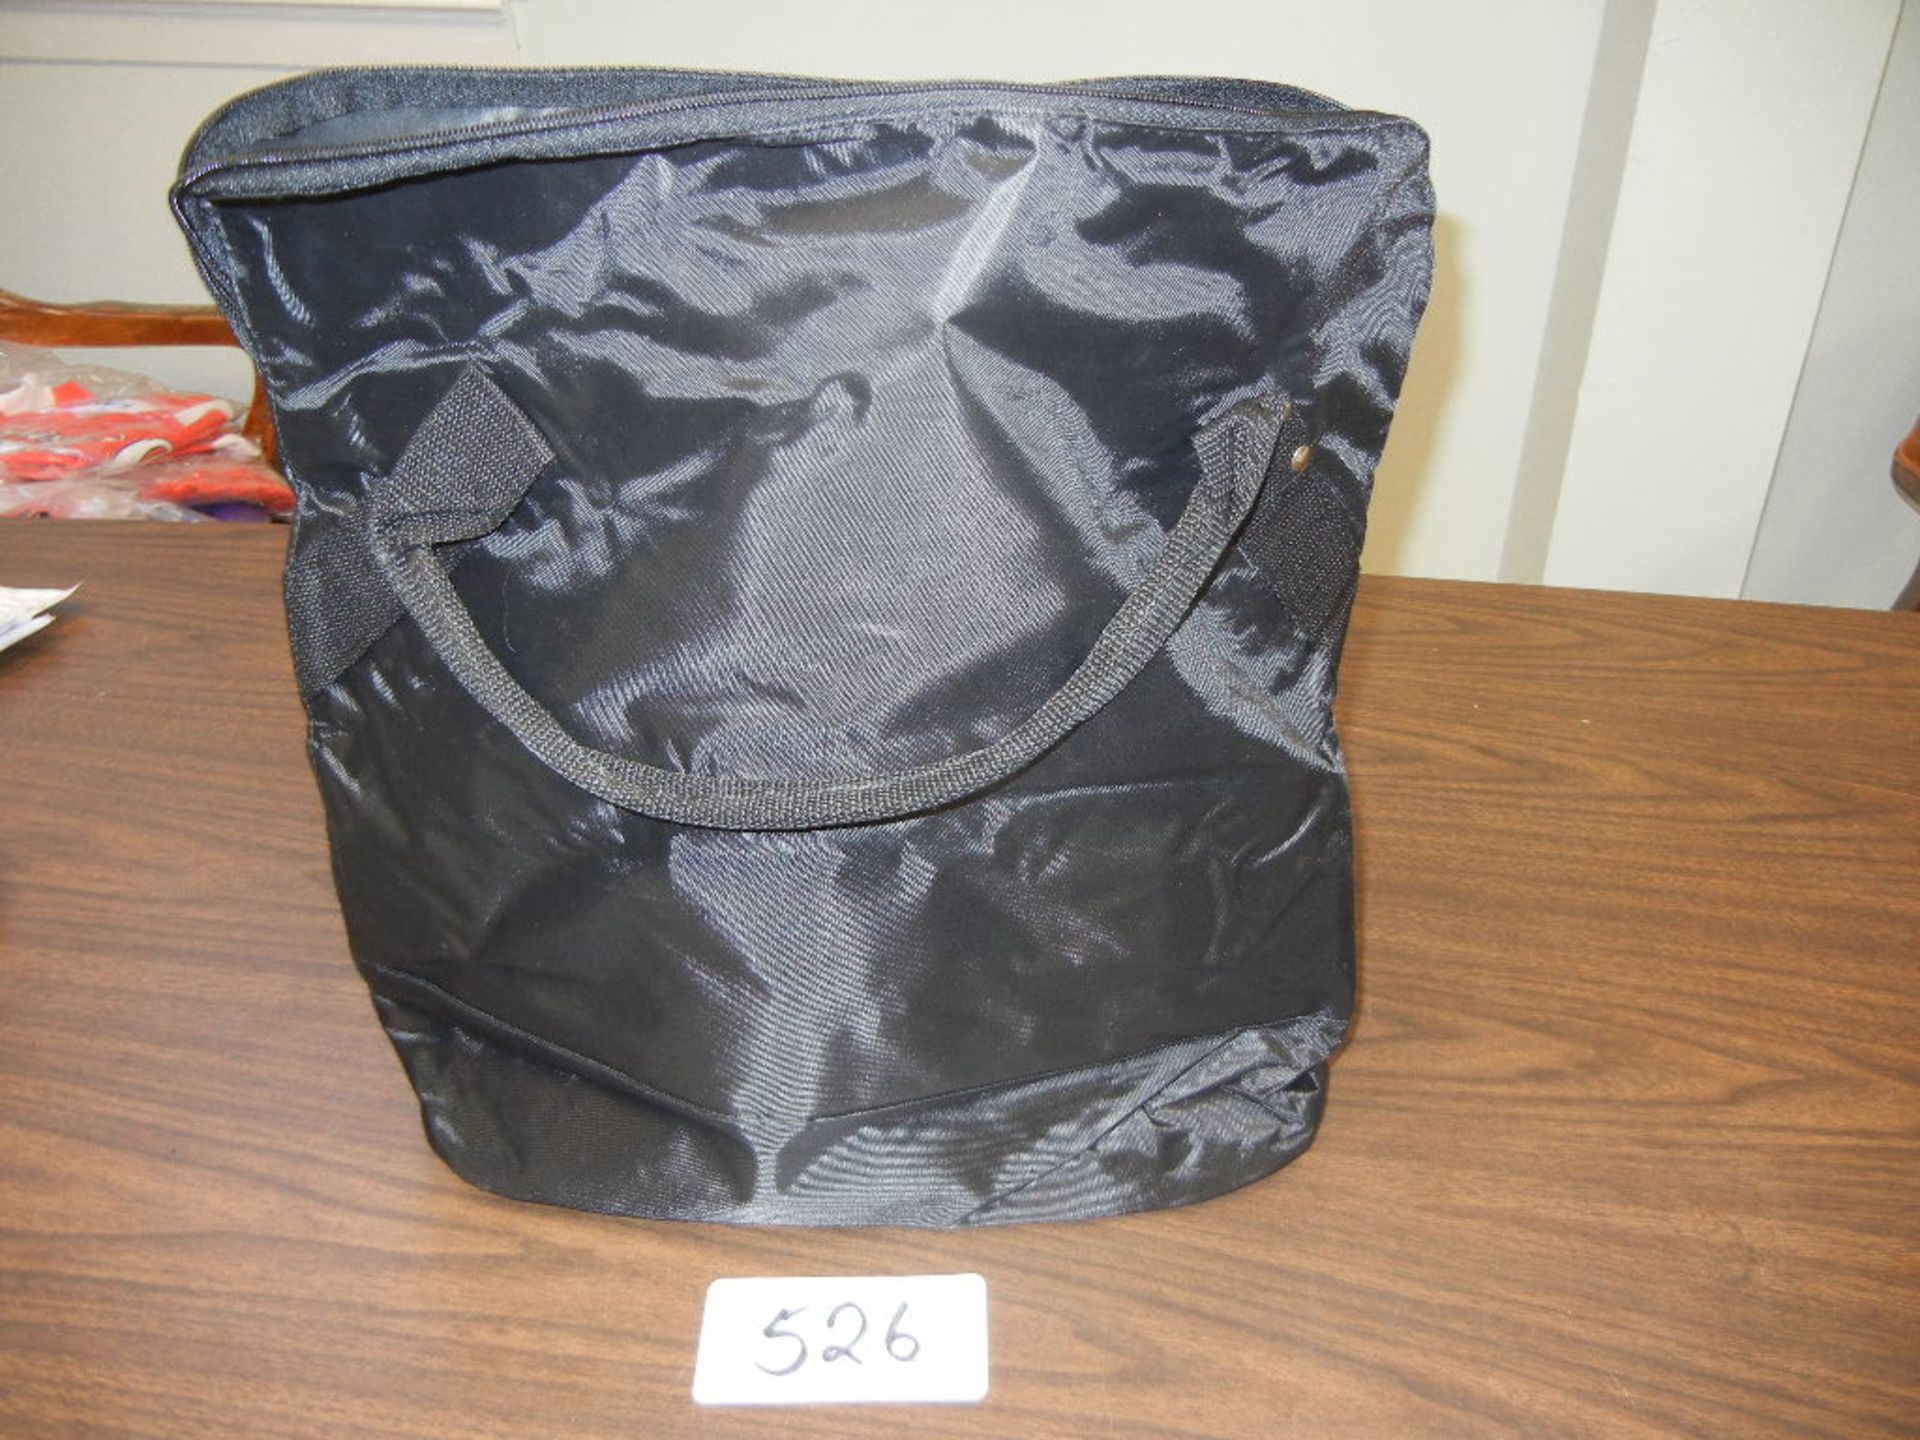 Standard Ball Bag, 420 denier Nylon Holds 36 Baseballs